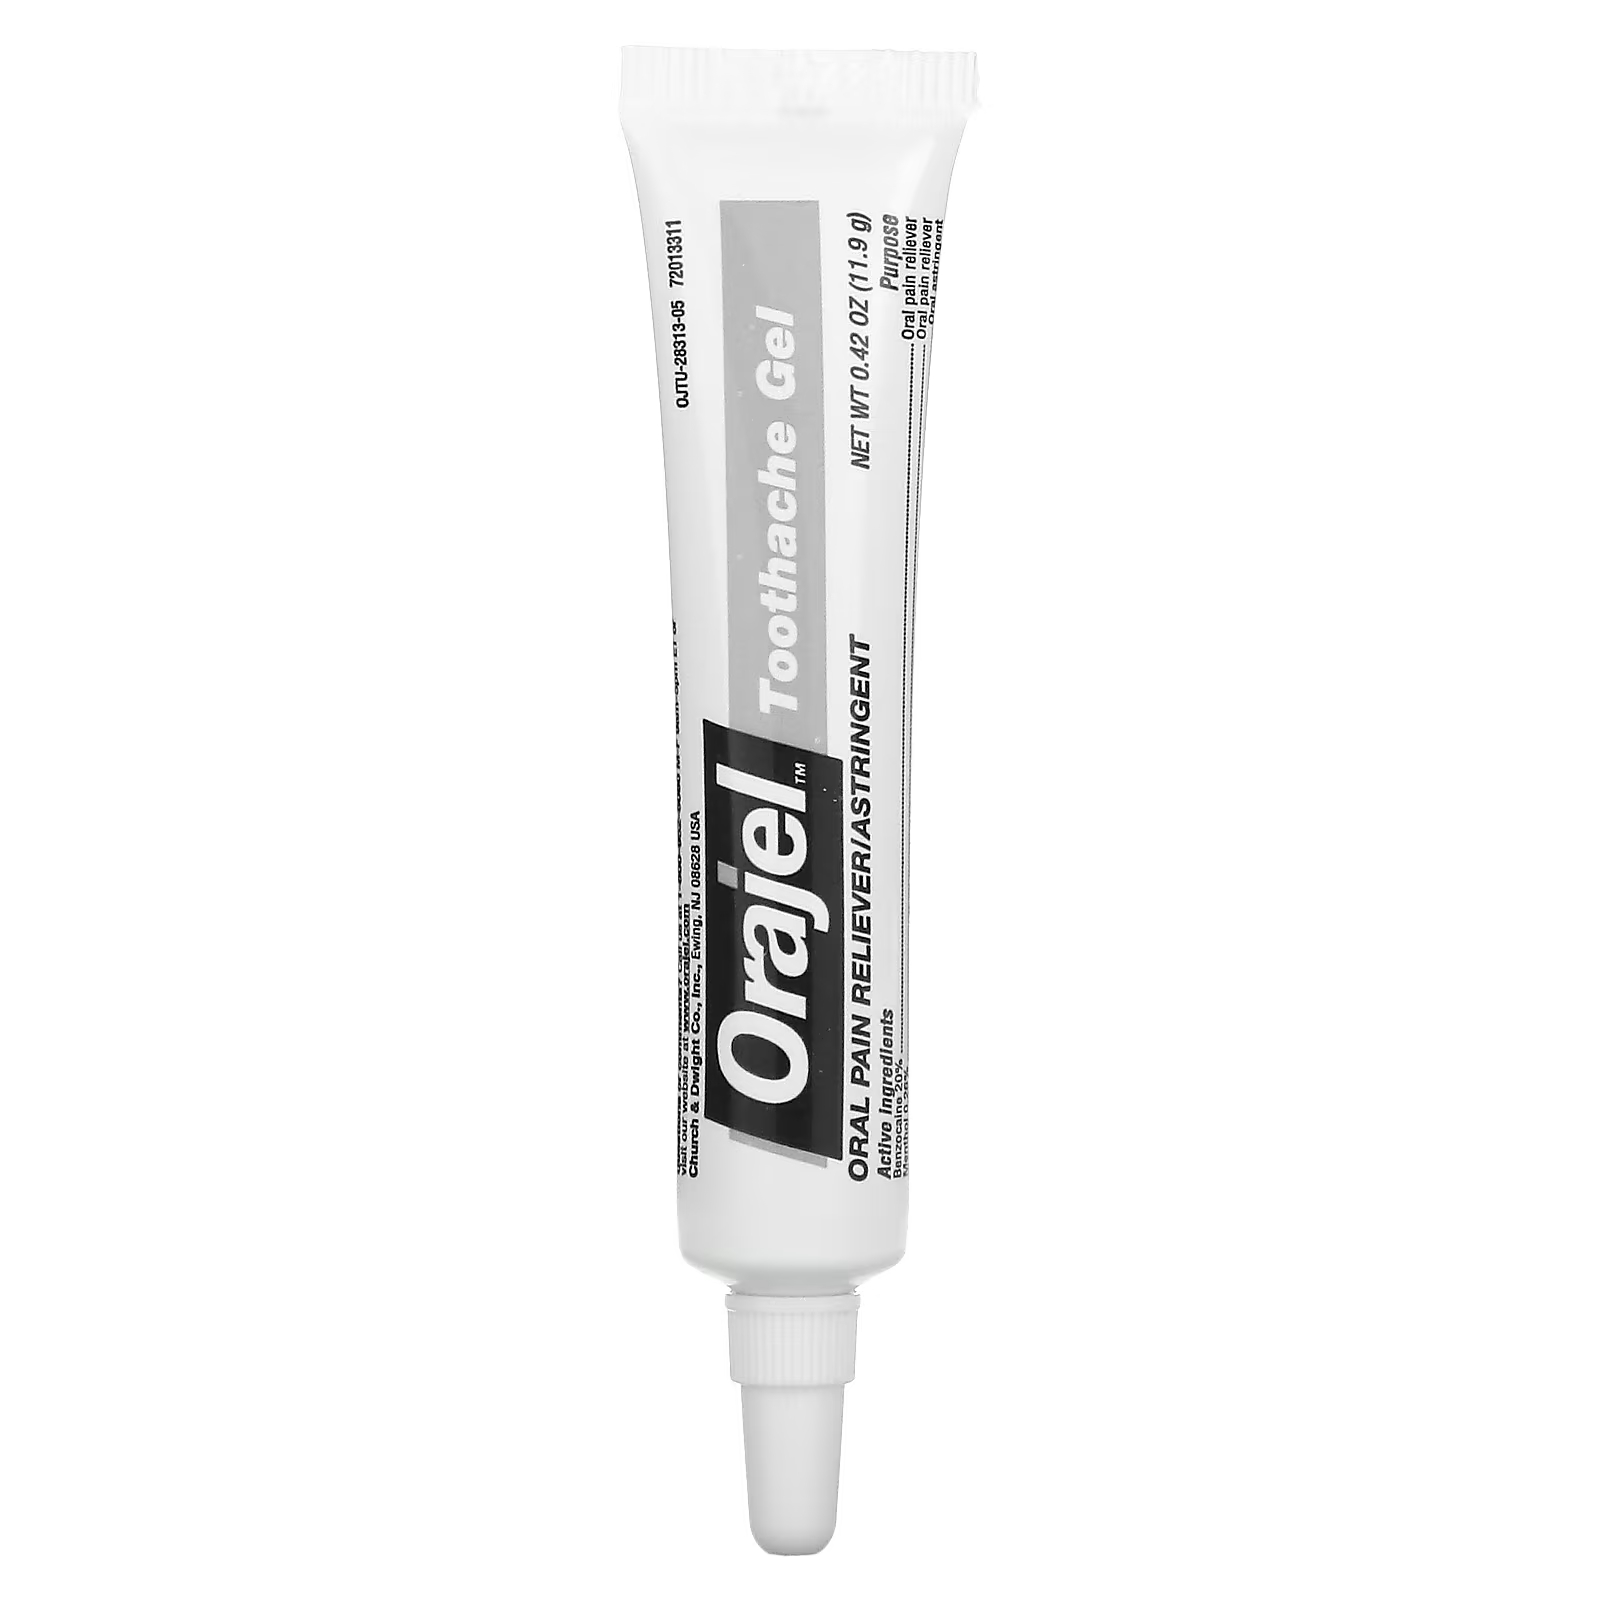 цена Гель обезболивающий Orajel 3x для лечения зубной боли и десен